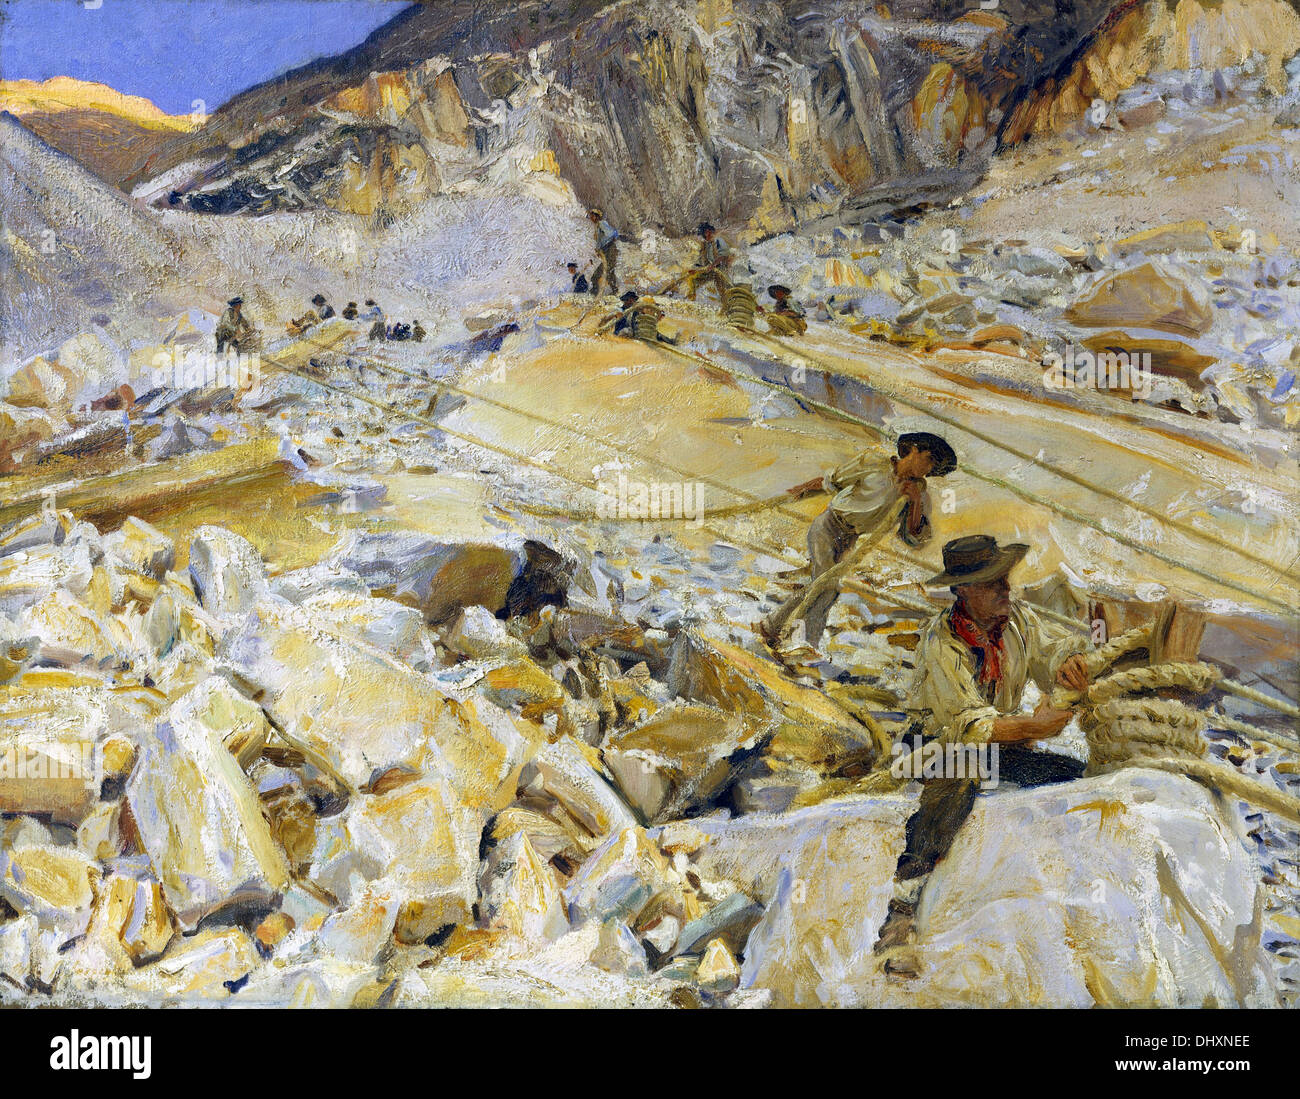 La réduction des carrières de marbre de Carrara - par John Singer Sargent, 1911 Banque D'Images